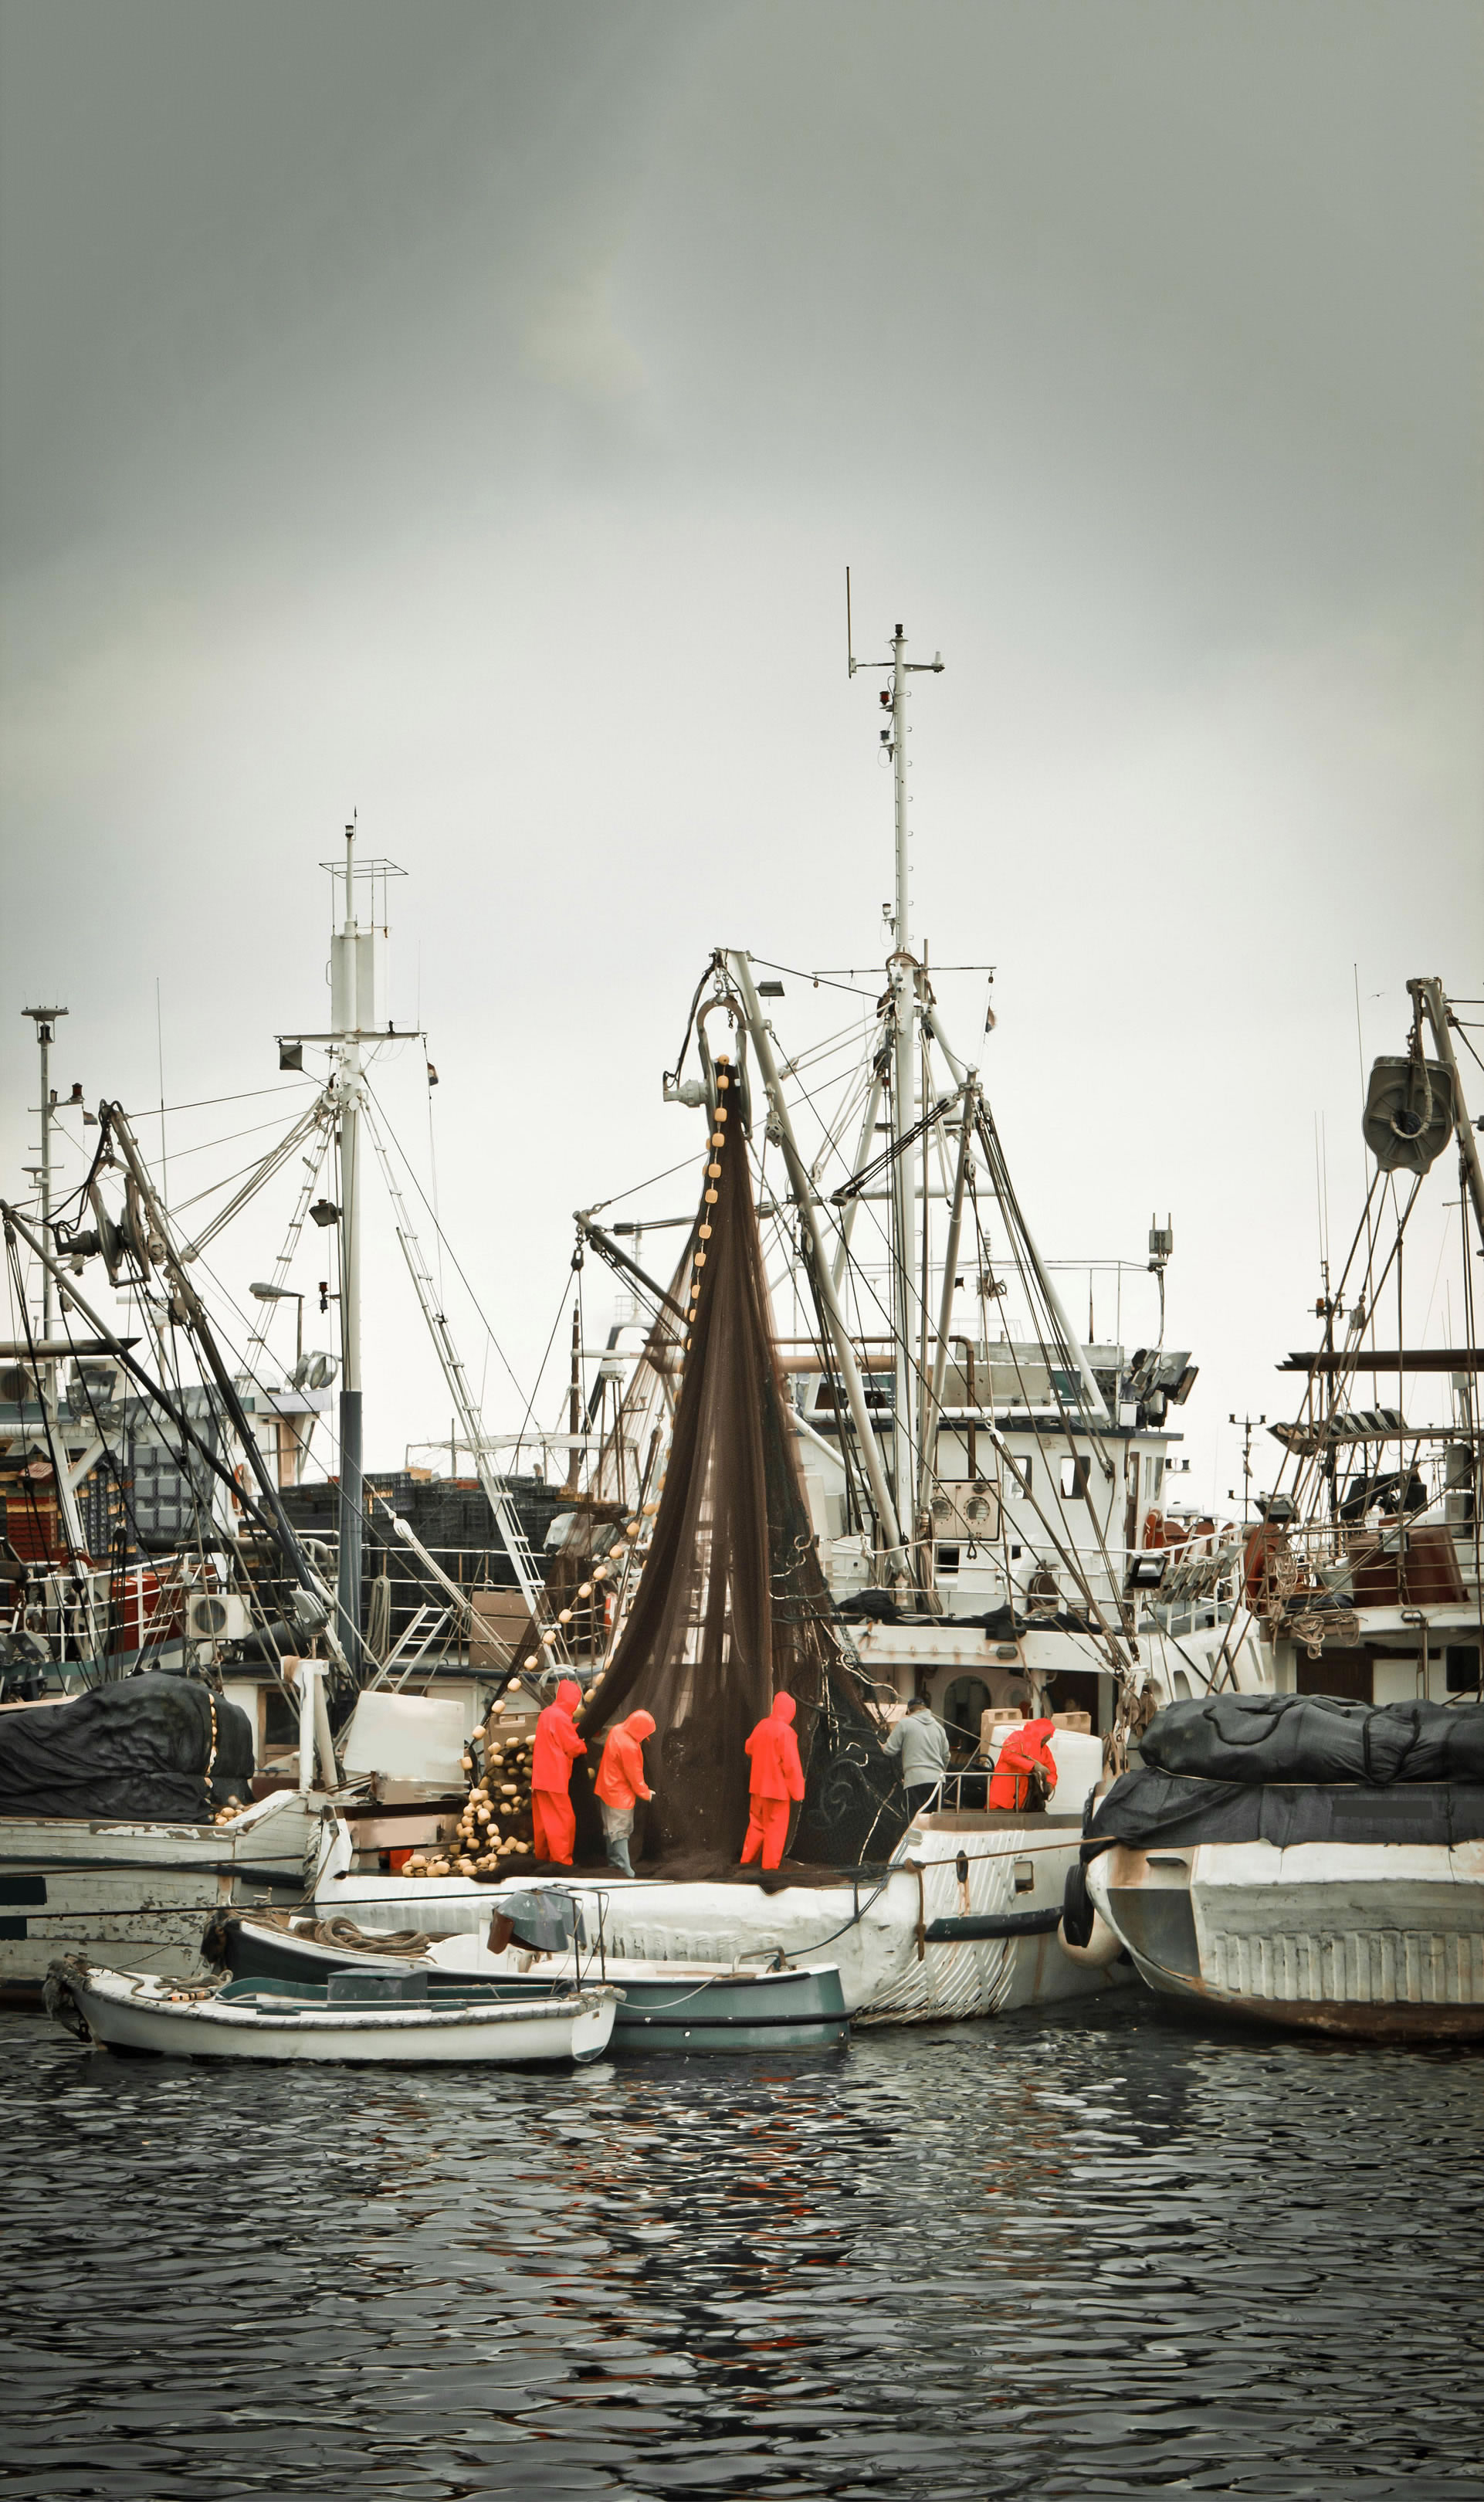 Ribiči v poklicnih oblačilih ravnajo z ribiško mrežo na plovilu z vlečno mrežo med plovili v ribiškem pristanišču.